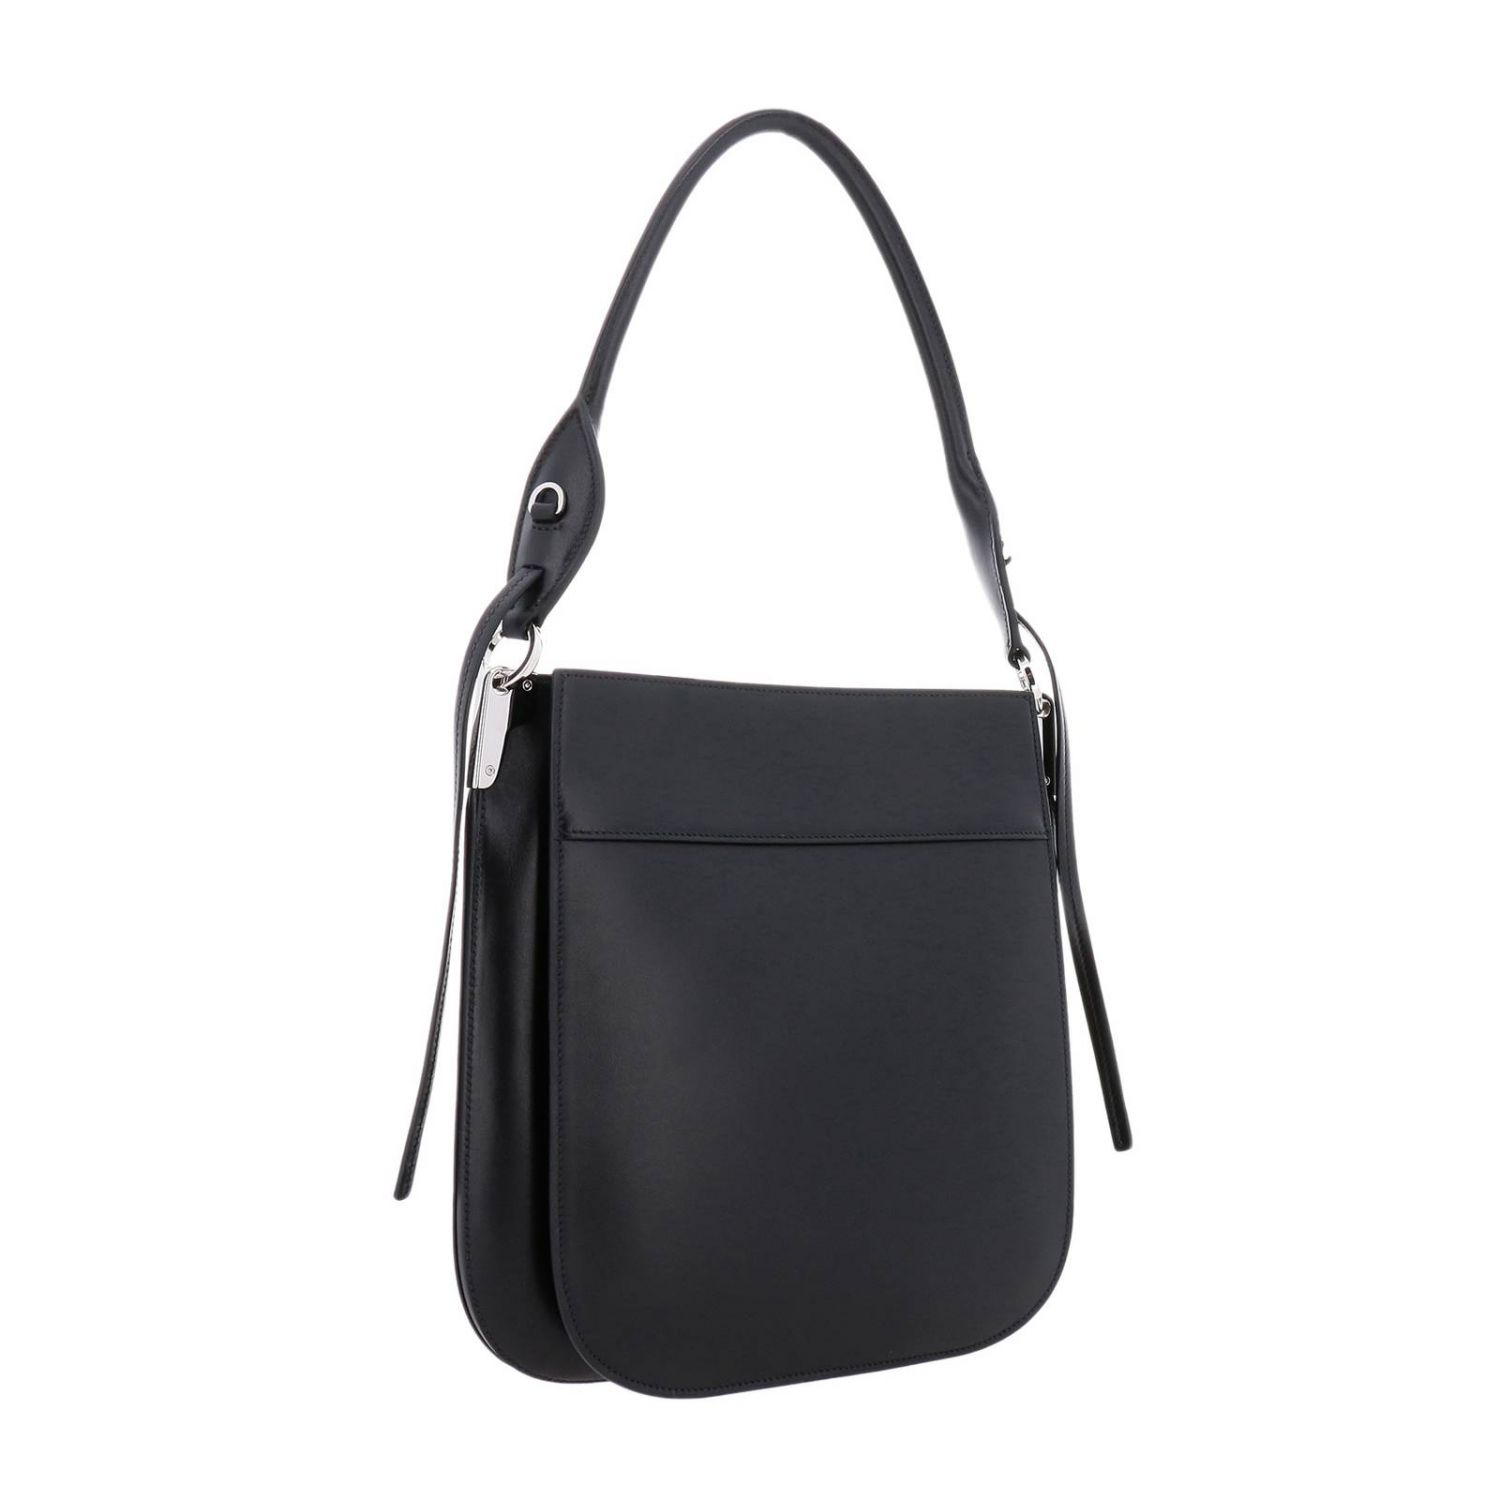 PRADA: Margit large bag in leather bag with Monochrome logo - Black | Prada  shoulder bag 1BC076OOH 2AIX online on 